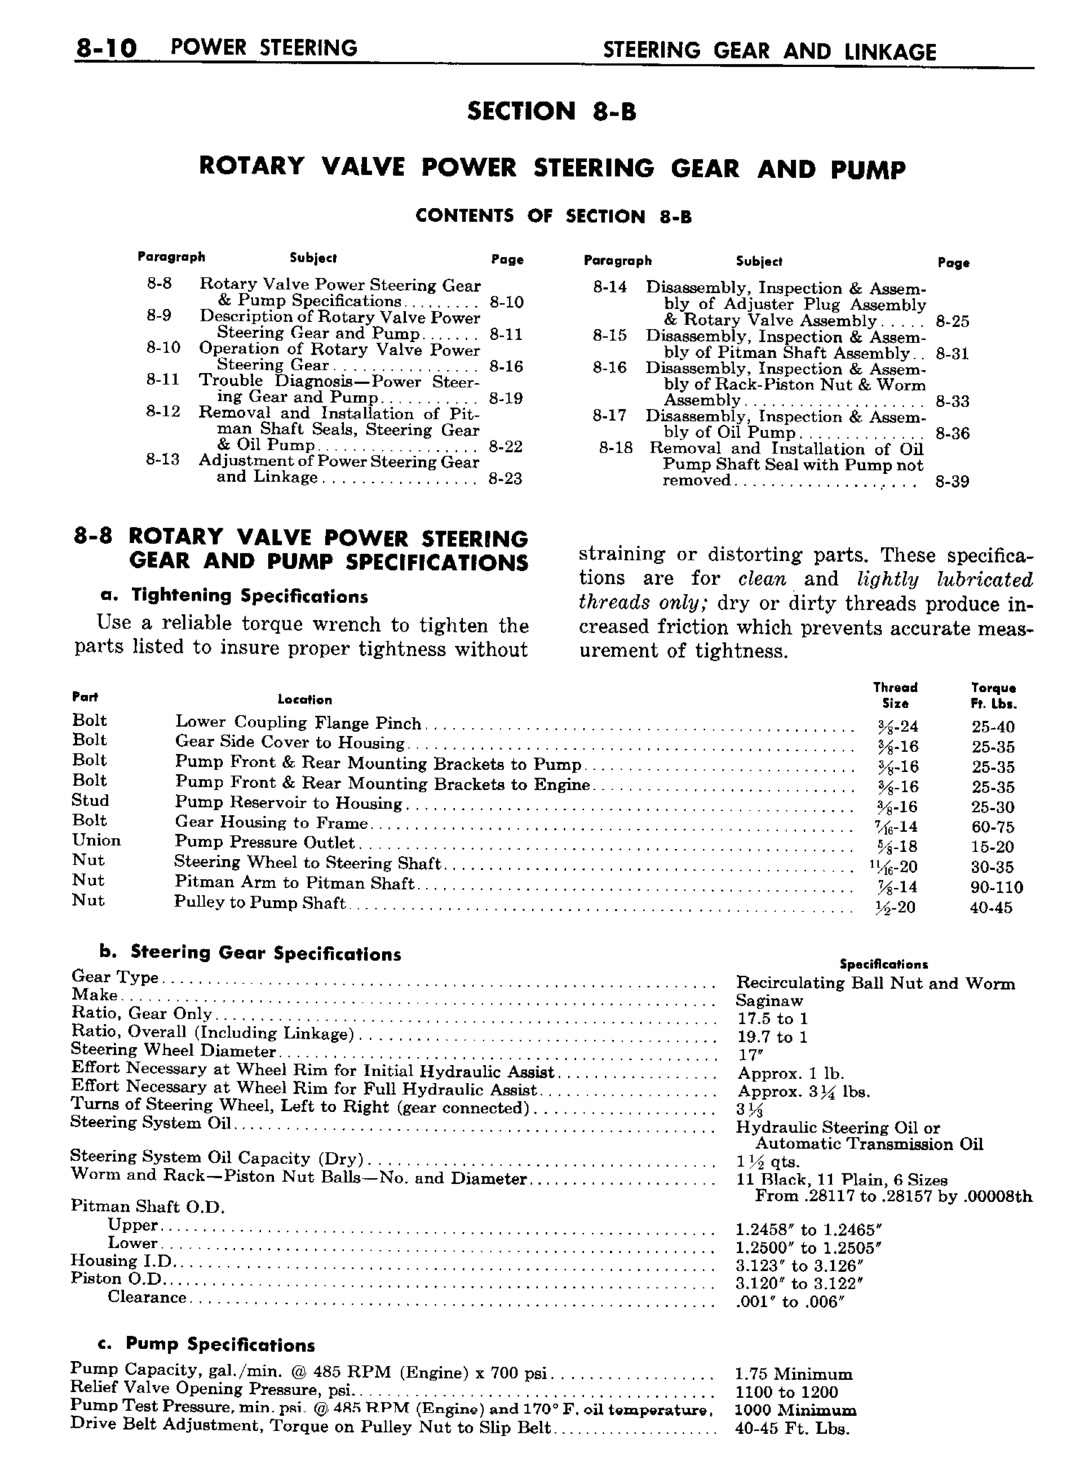 n_09 1960 Buick Shop Manual - Steering-010-010.jpg